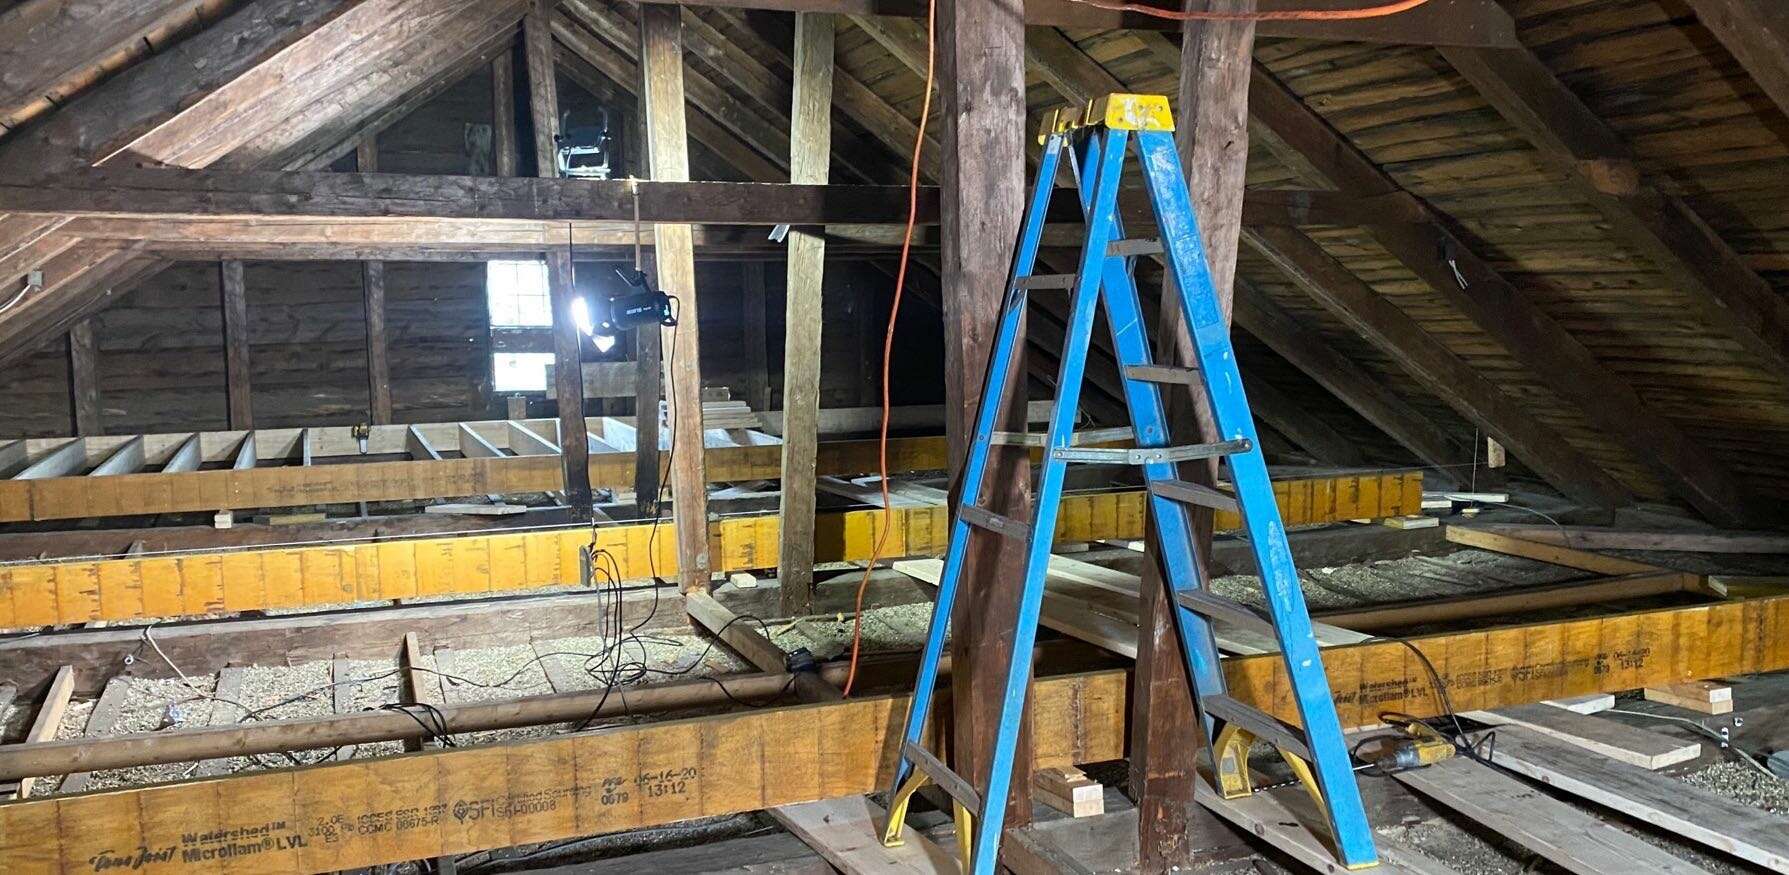 attic under construction